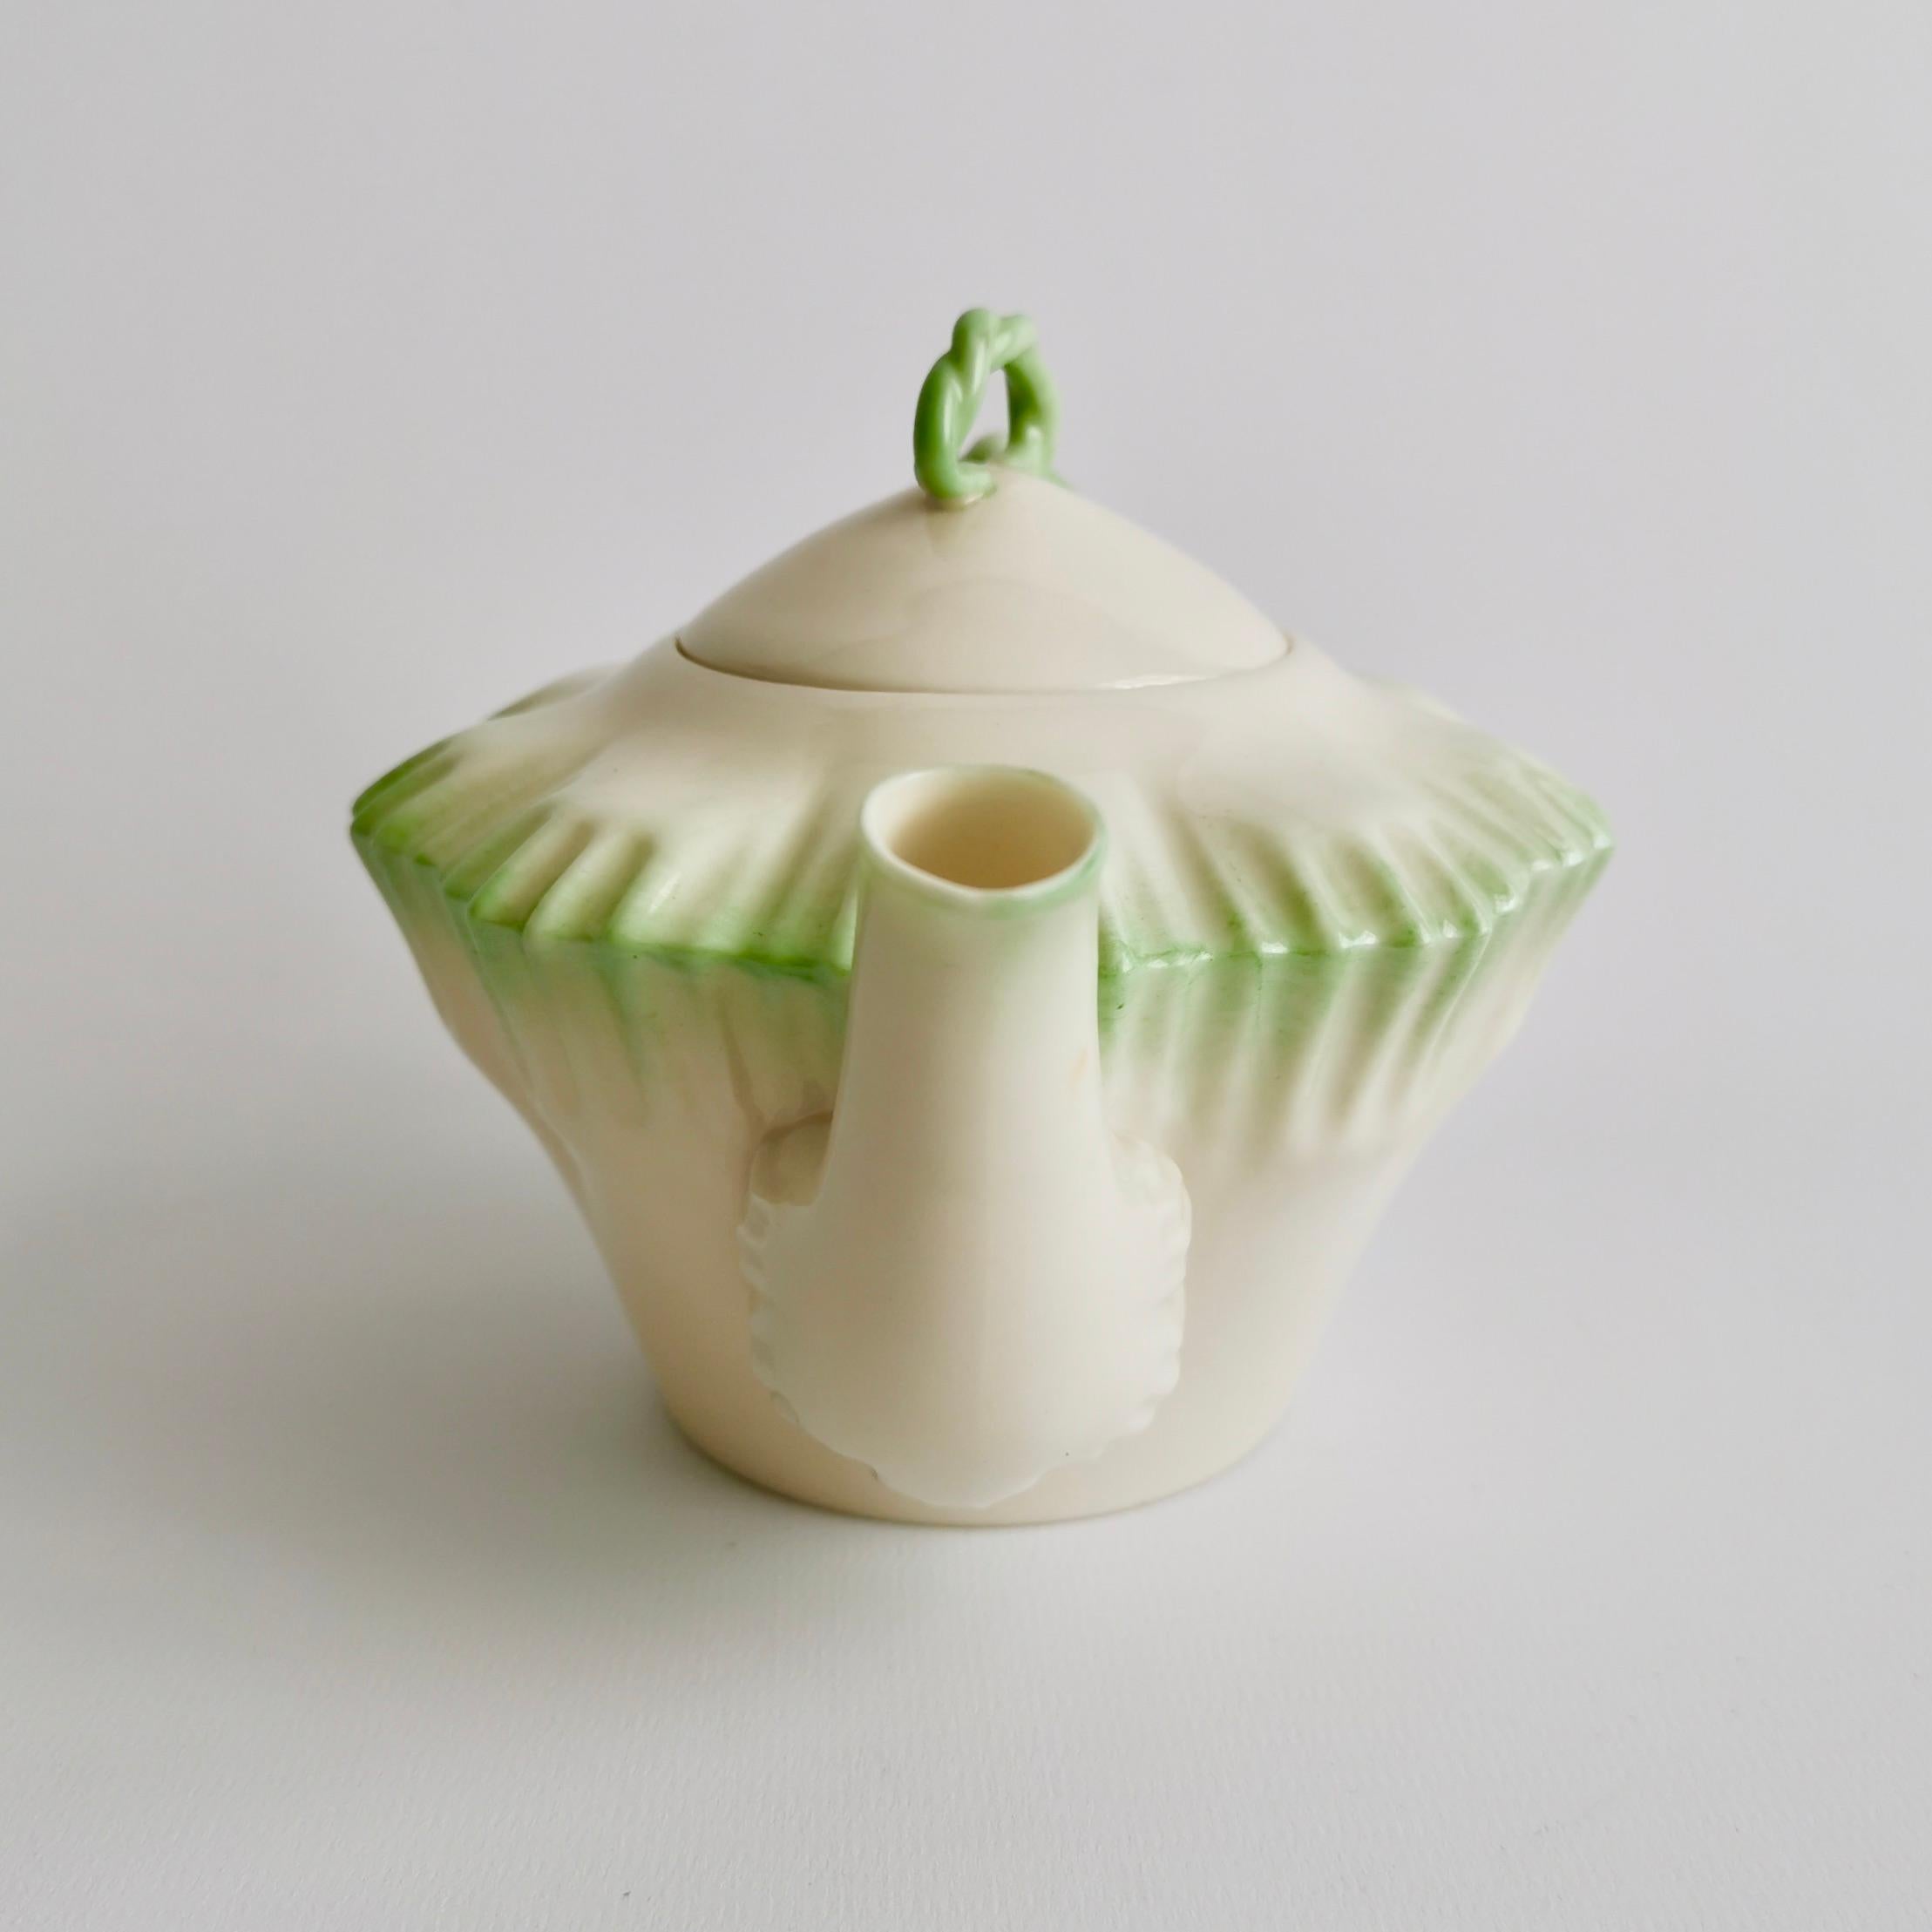 Victorian Parian Porcelain Teapot, Belleek Green Hexagon Shape, 2nd BM 1891-1926